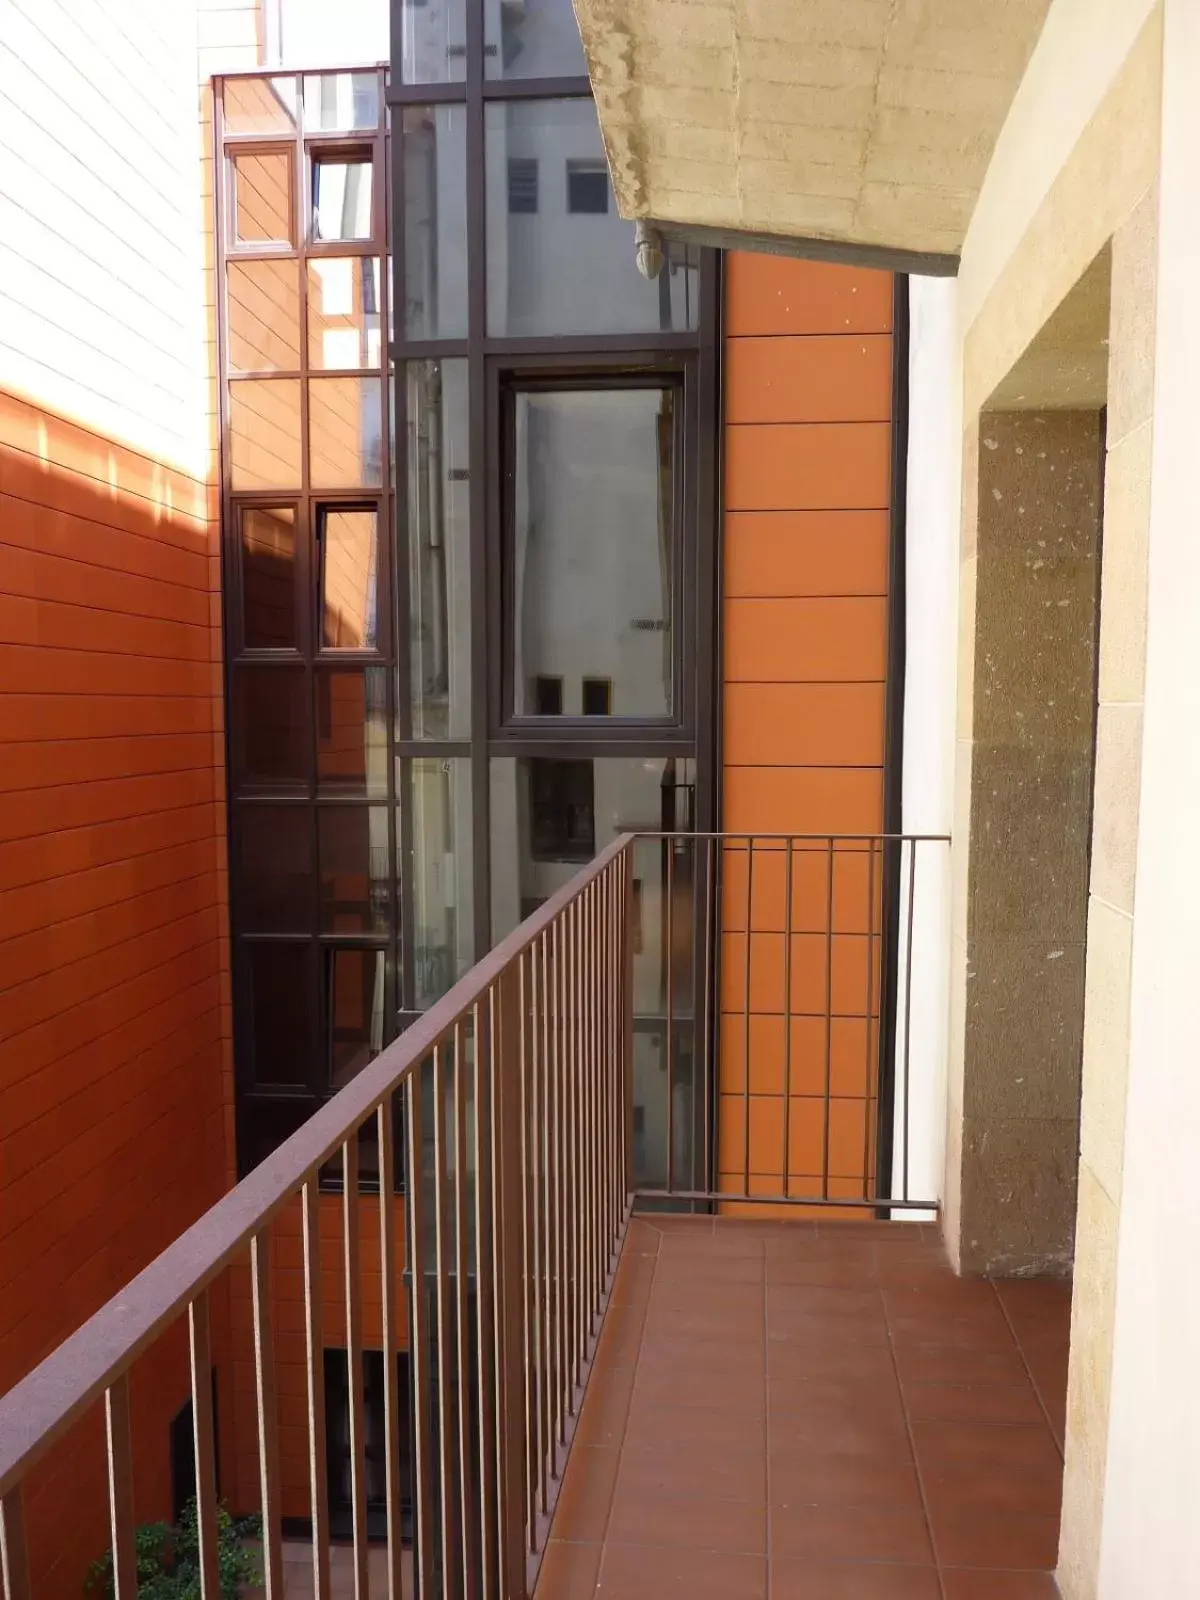 Balcony/Terrace in Barcelona House